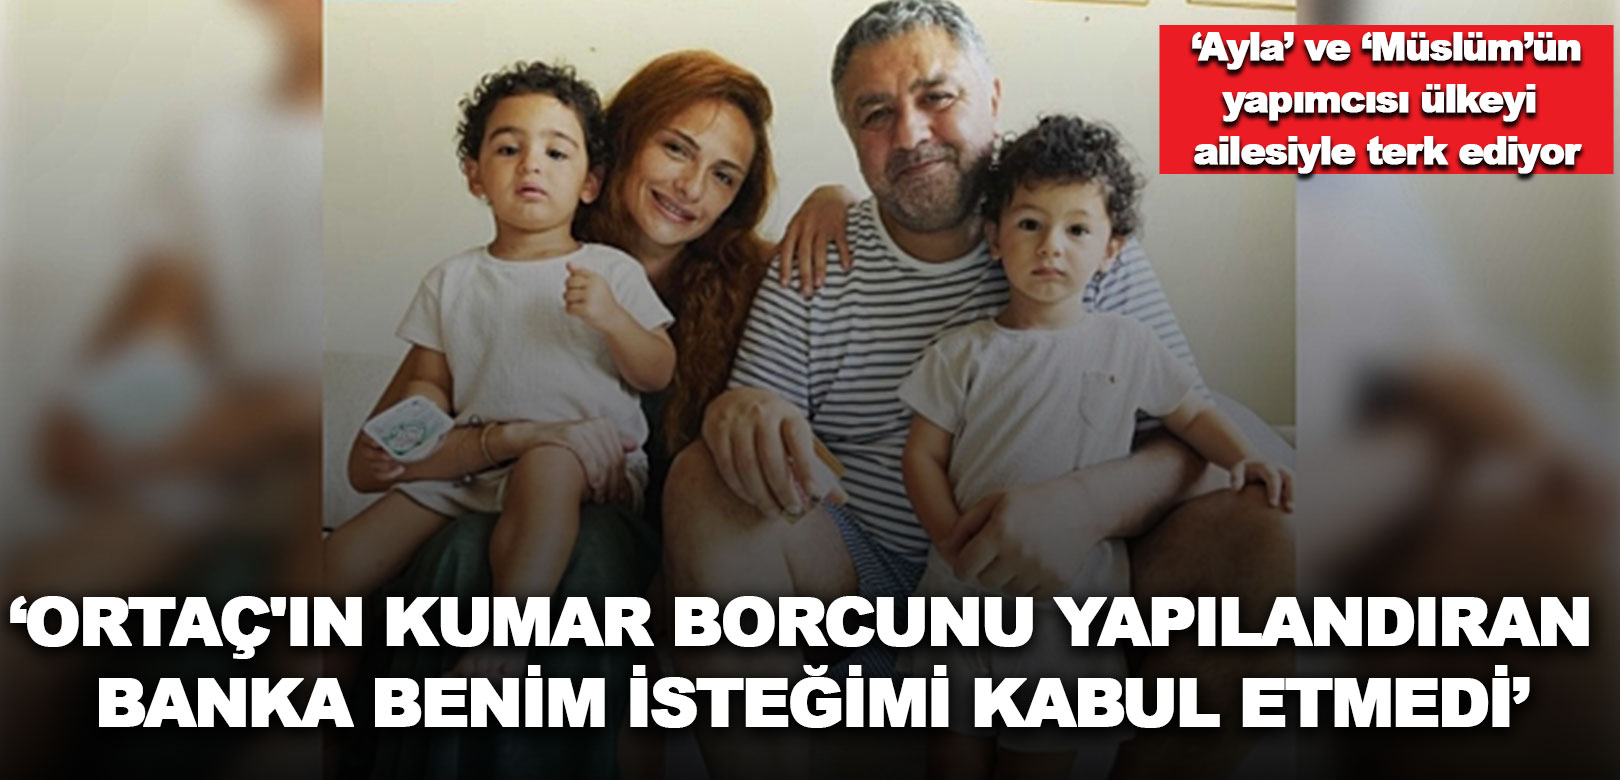 Ayla ve Müslüm’ün yapımcısı Mustafa Uslu, borcunu ödeyemediği için Türkiye’yi terk ediyor